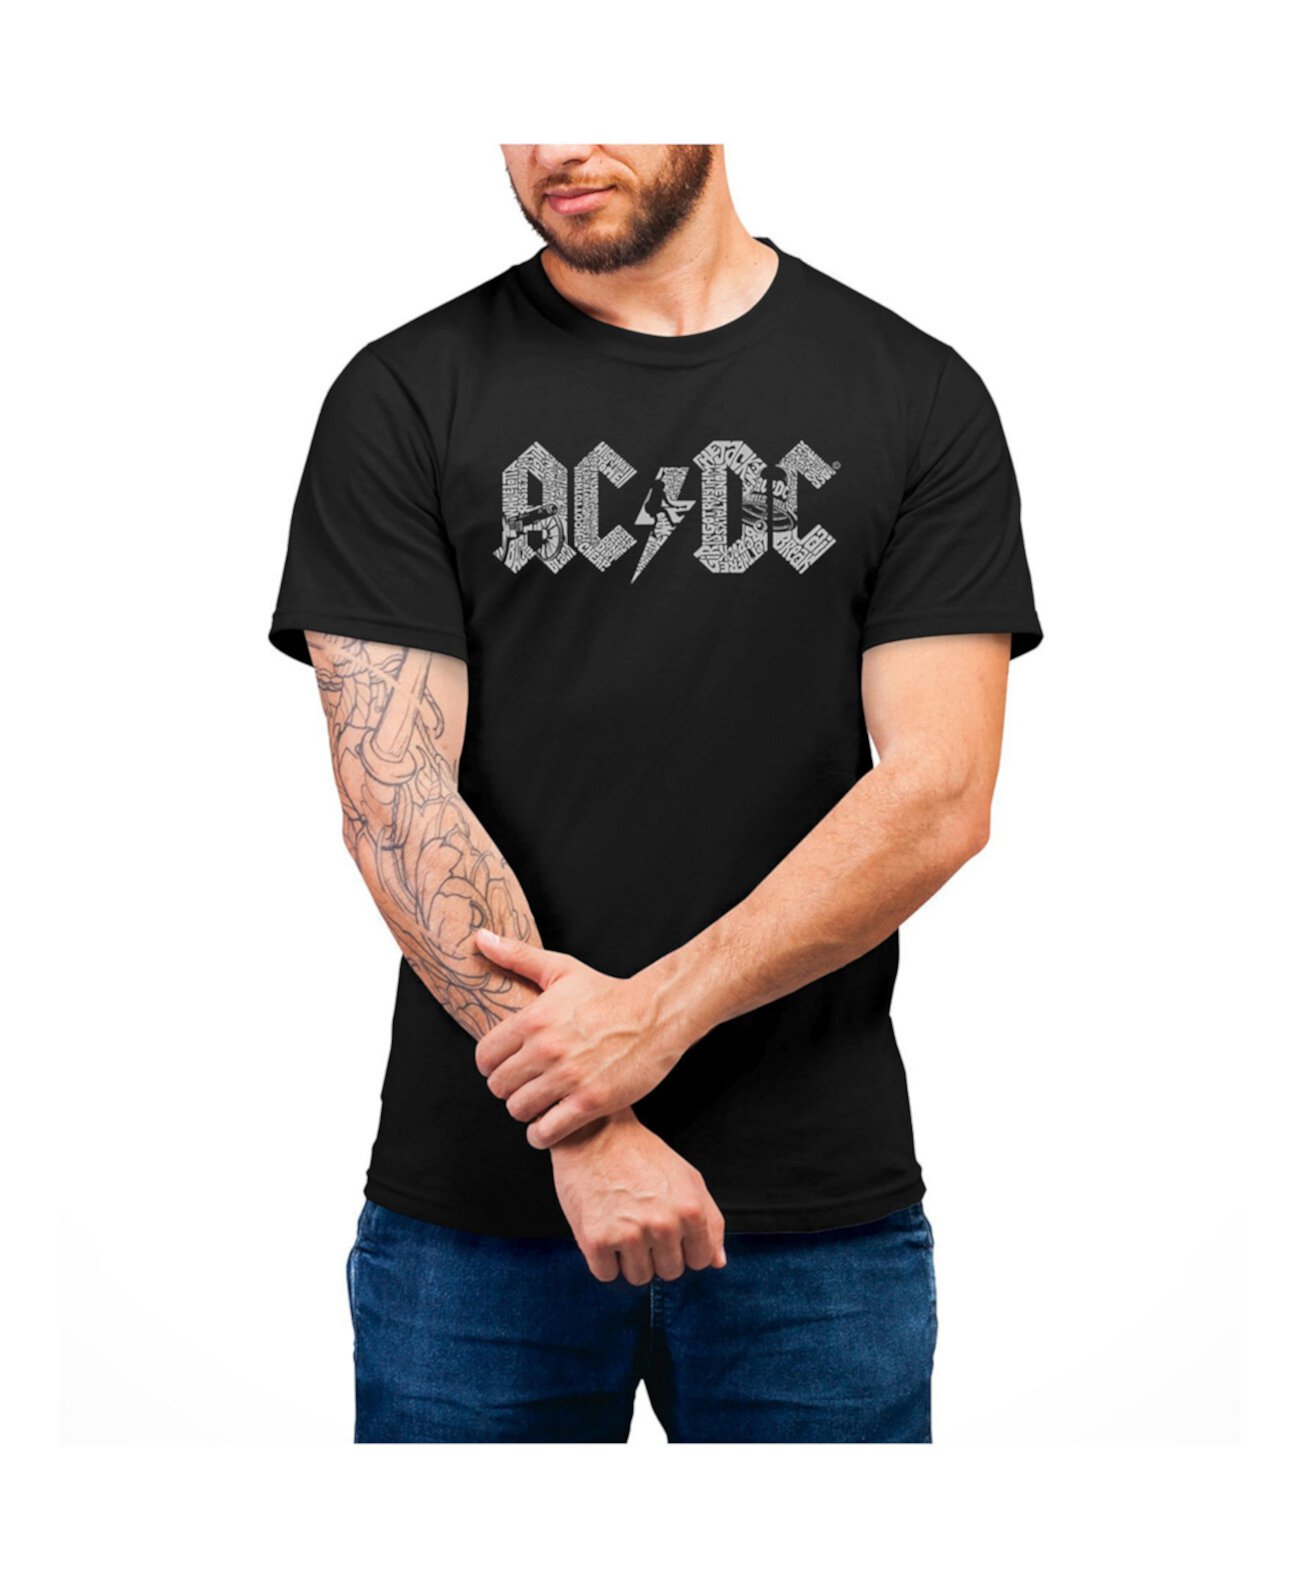 Мужская хлопковая майка LA Pop Art с логотипом AC/DC LA Pop Art